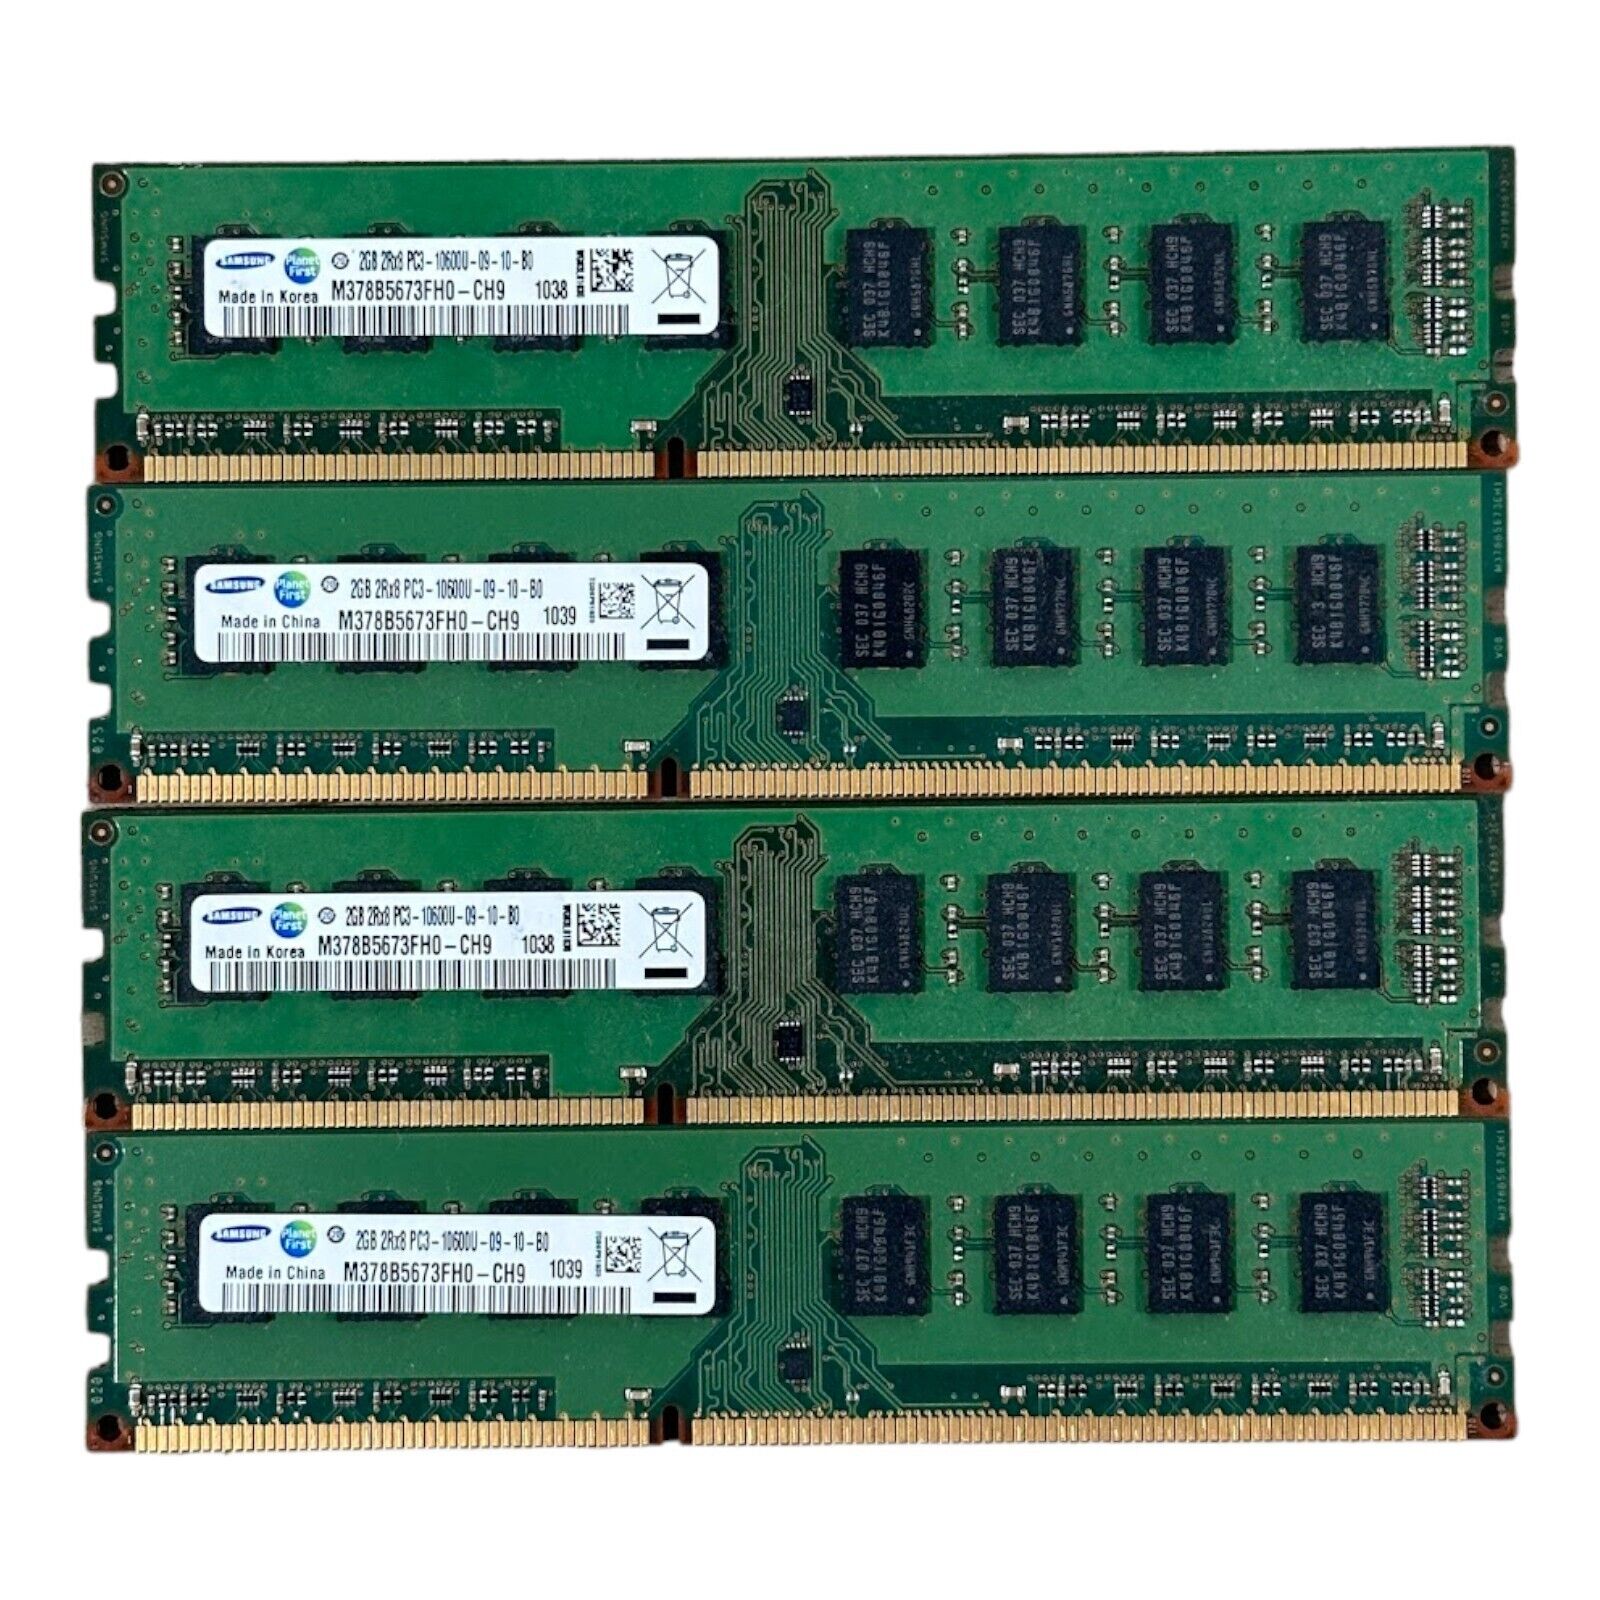 Samsung 8GB (2GBx4), PC3-10600U DDR3 Desktop DIMM RAM M378B5673FH0-CH9